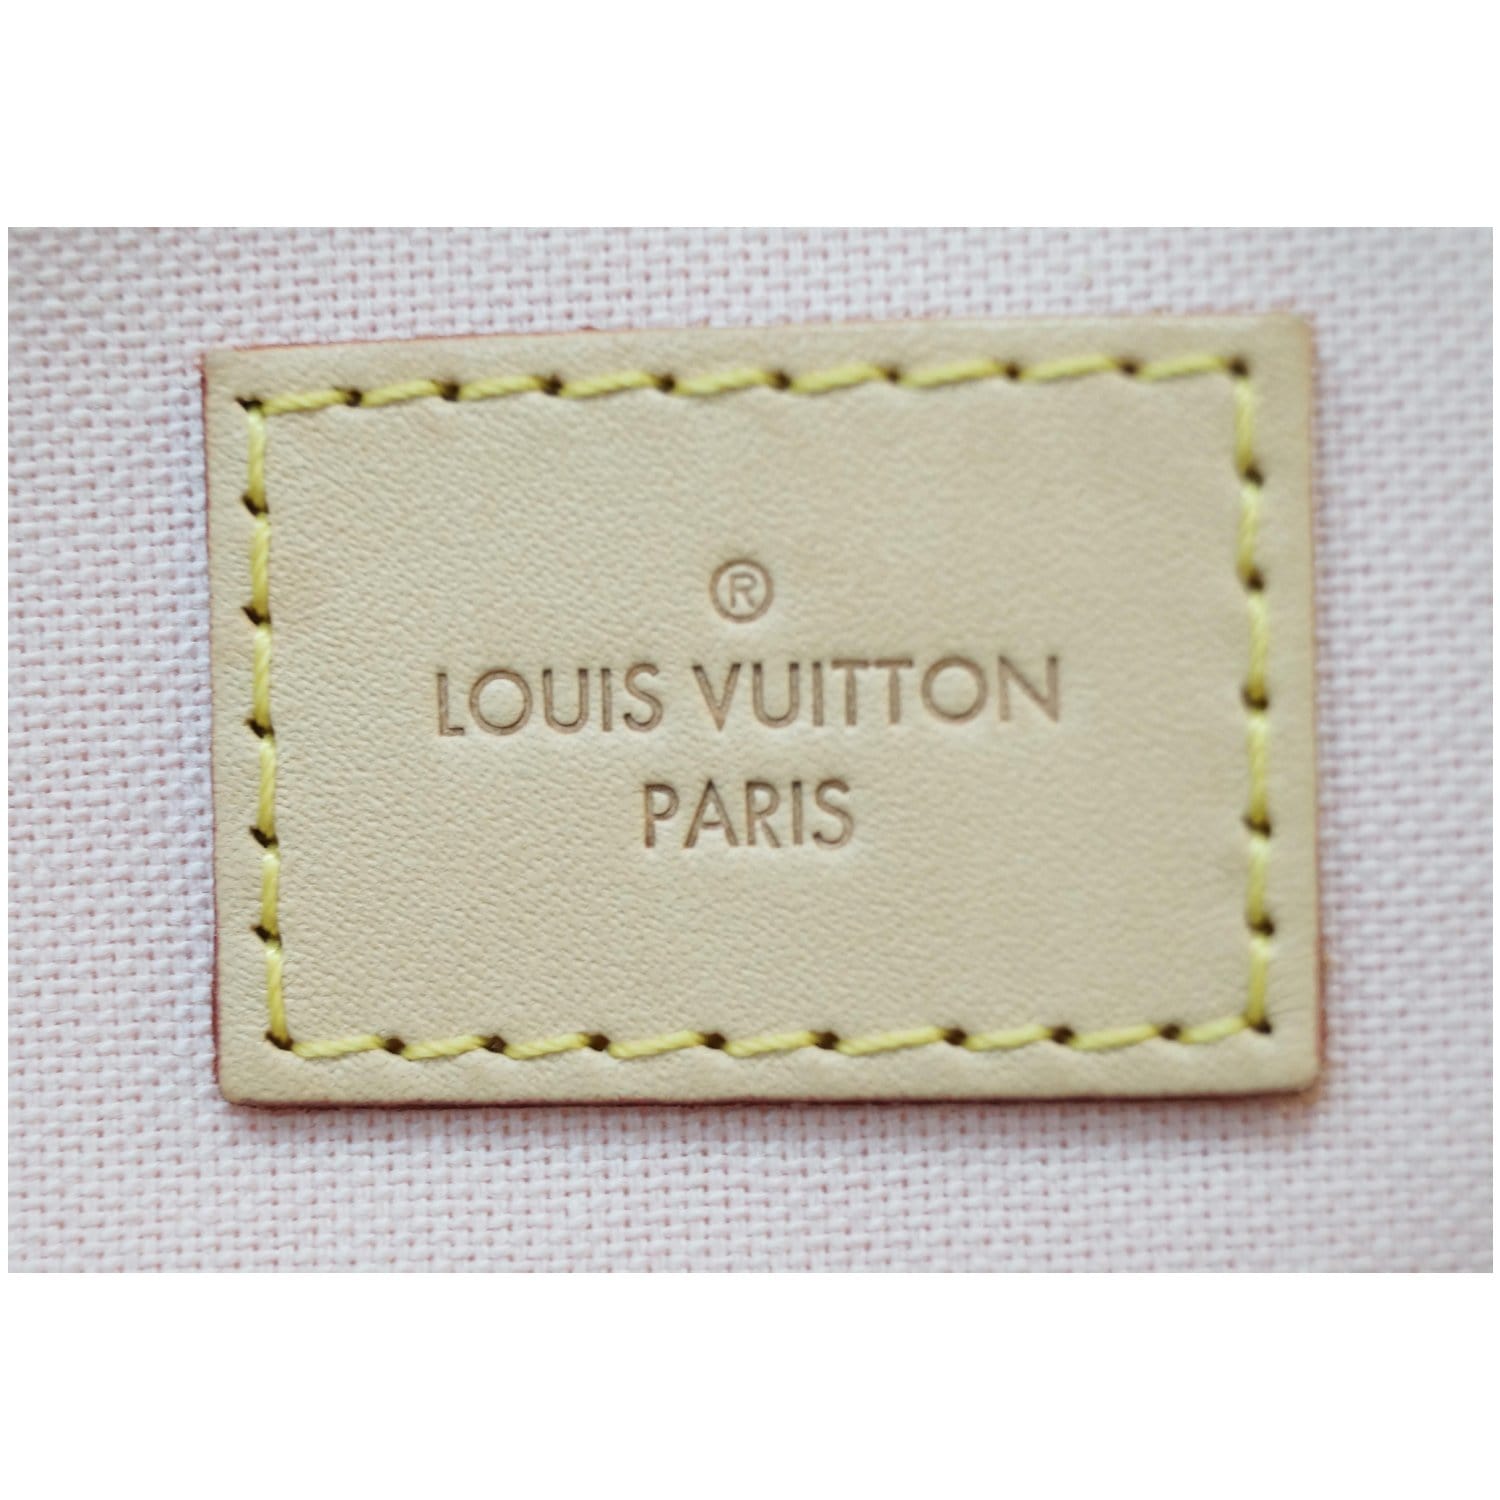 Authentic Louis Vuitton Damier Azur Iena MM for Sale in Plainfield